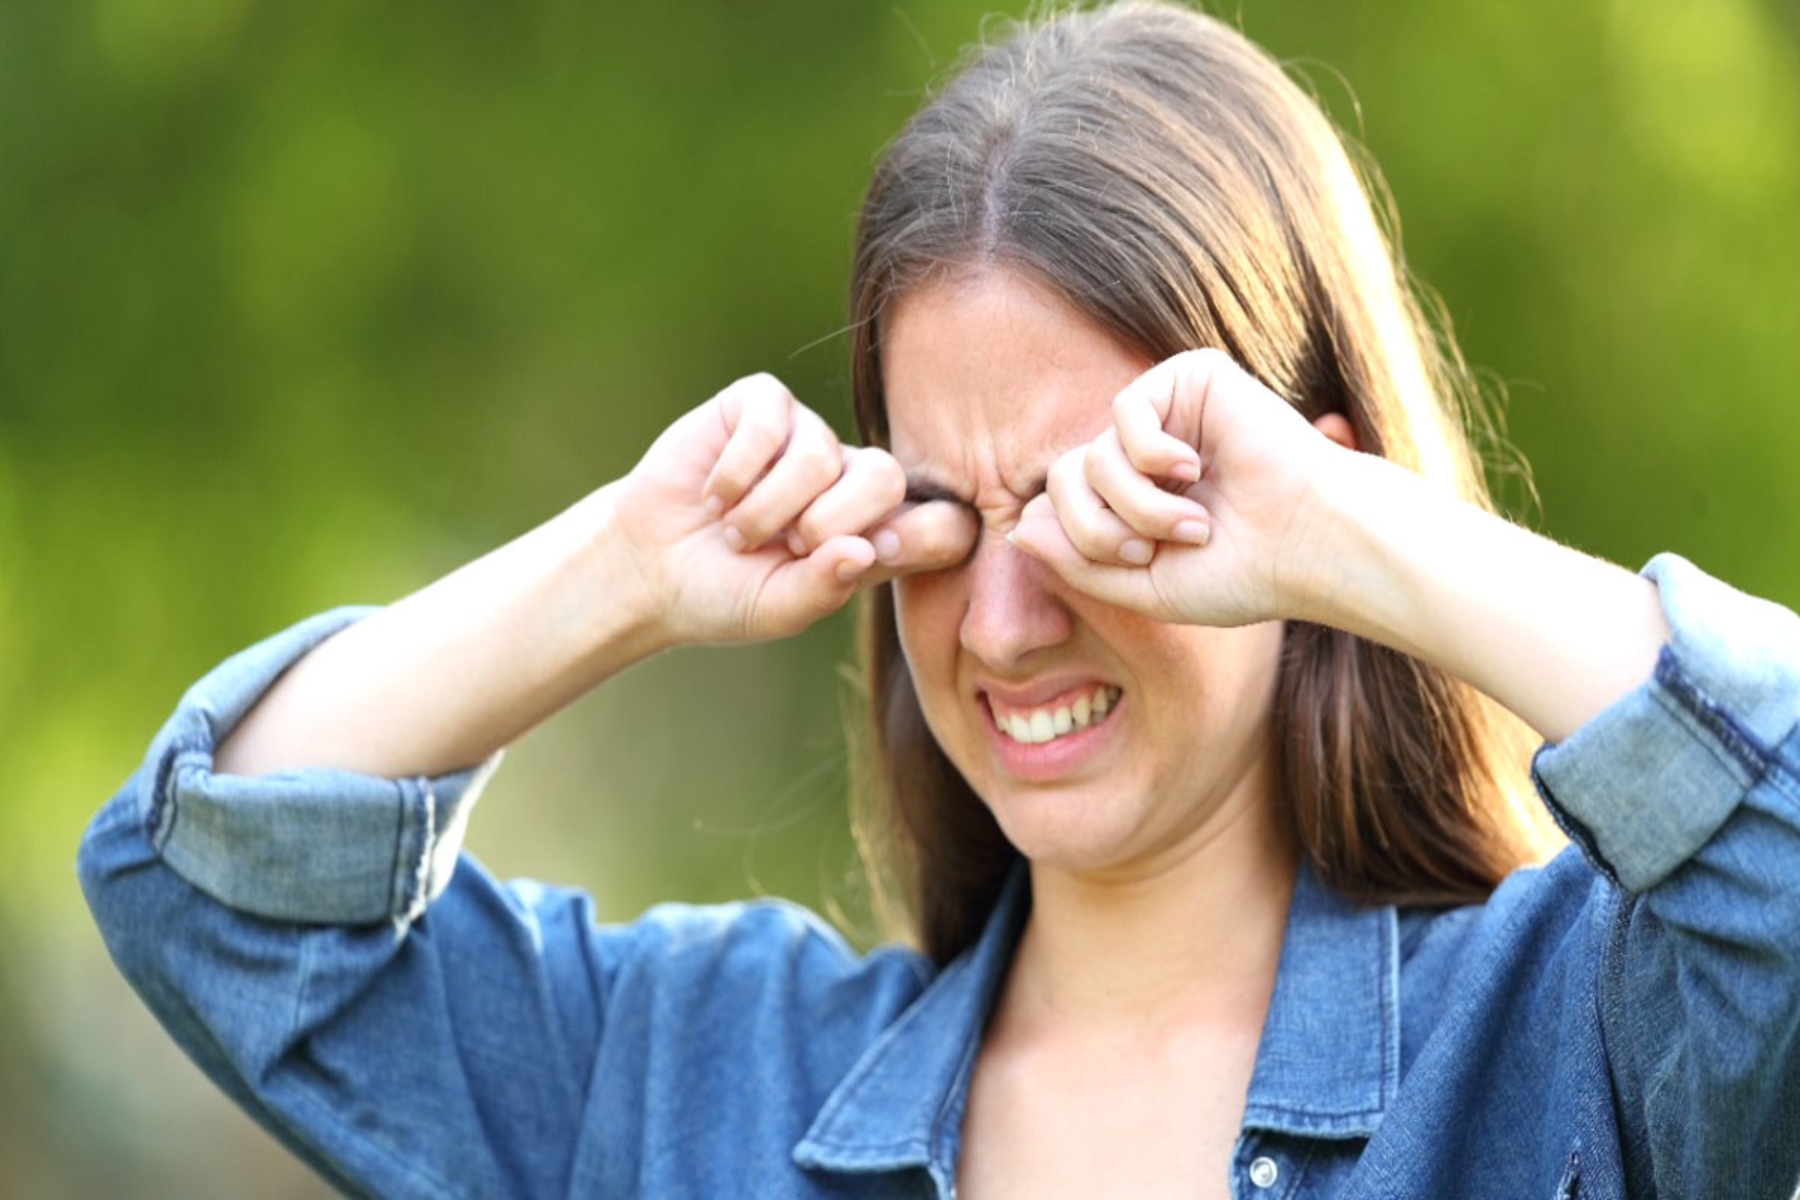 Μάτια καύσωνας: Πώς να προστατεύσετε τα μάτια από το κύμα καύσωνα;